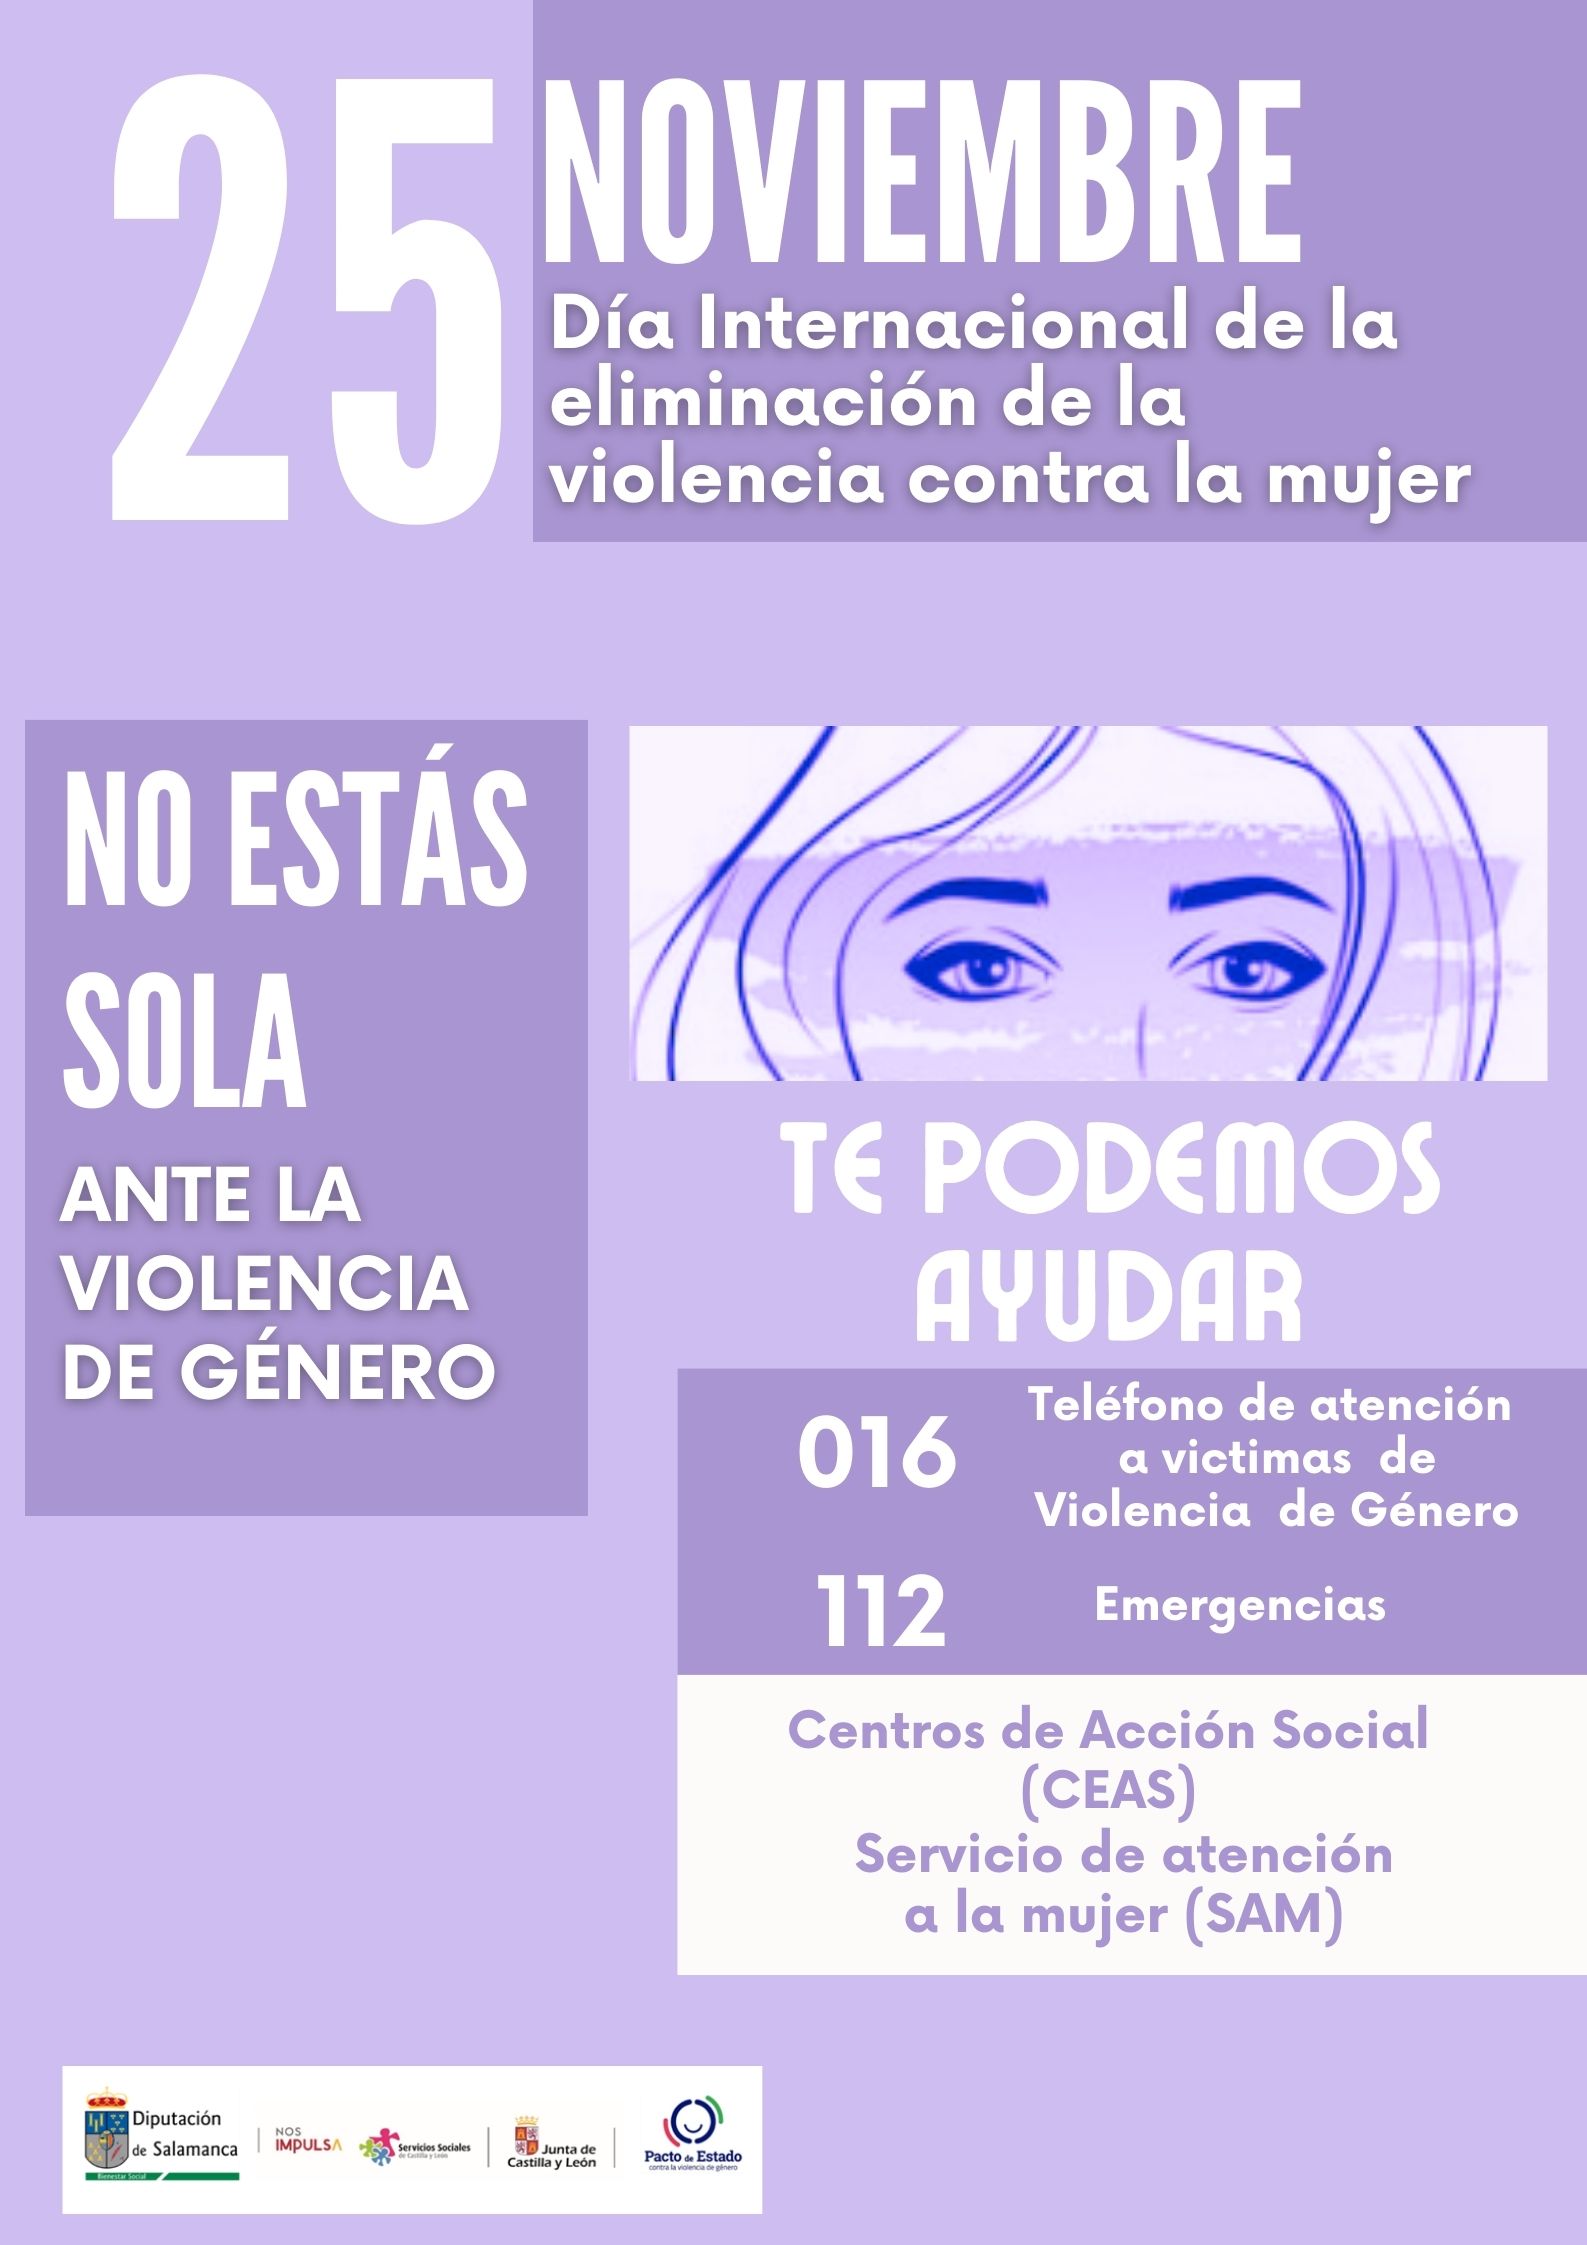 Campaña de sensibilización social contra la violencia de género